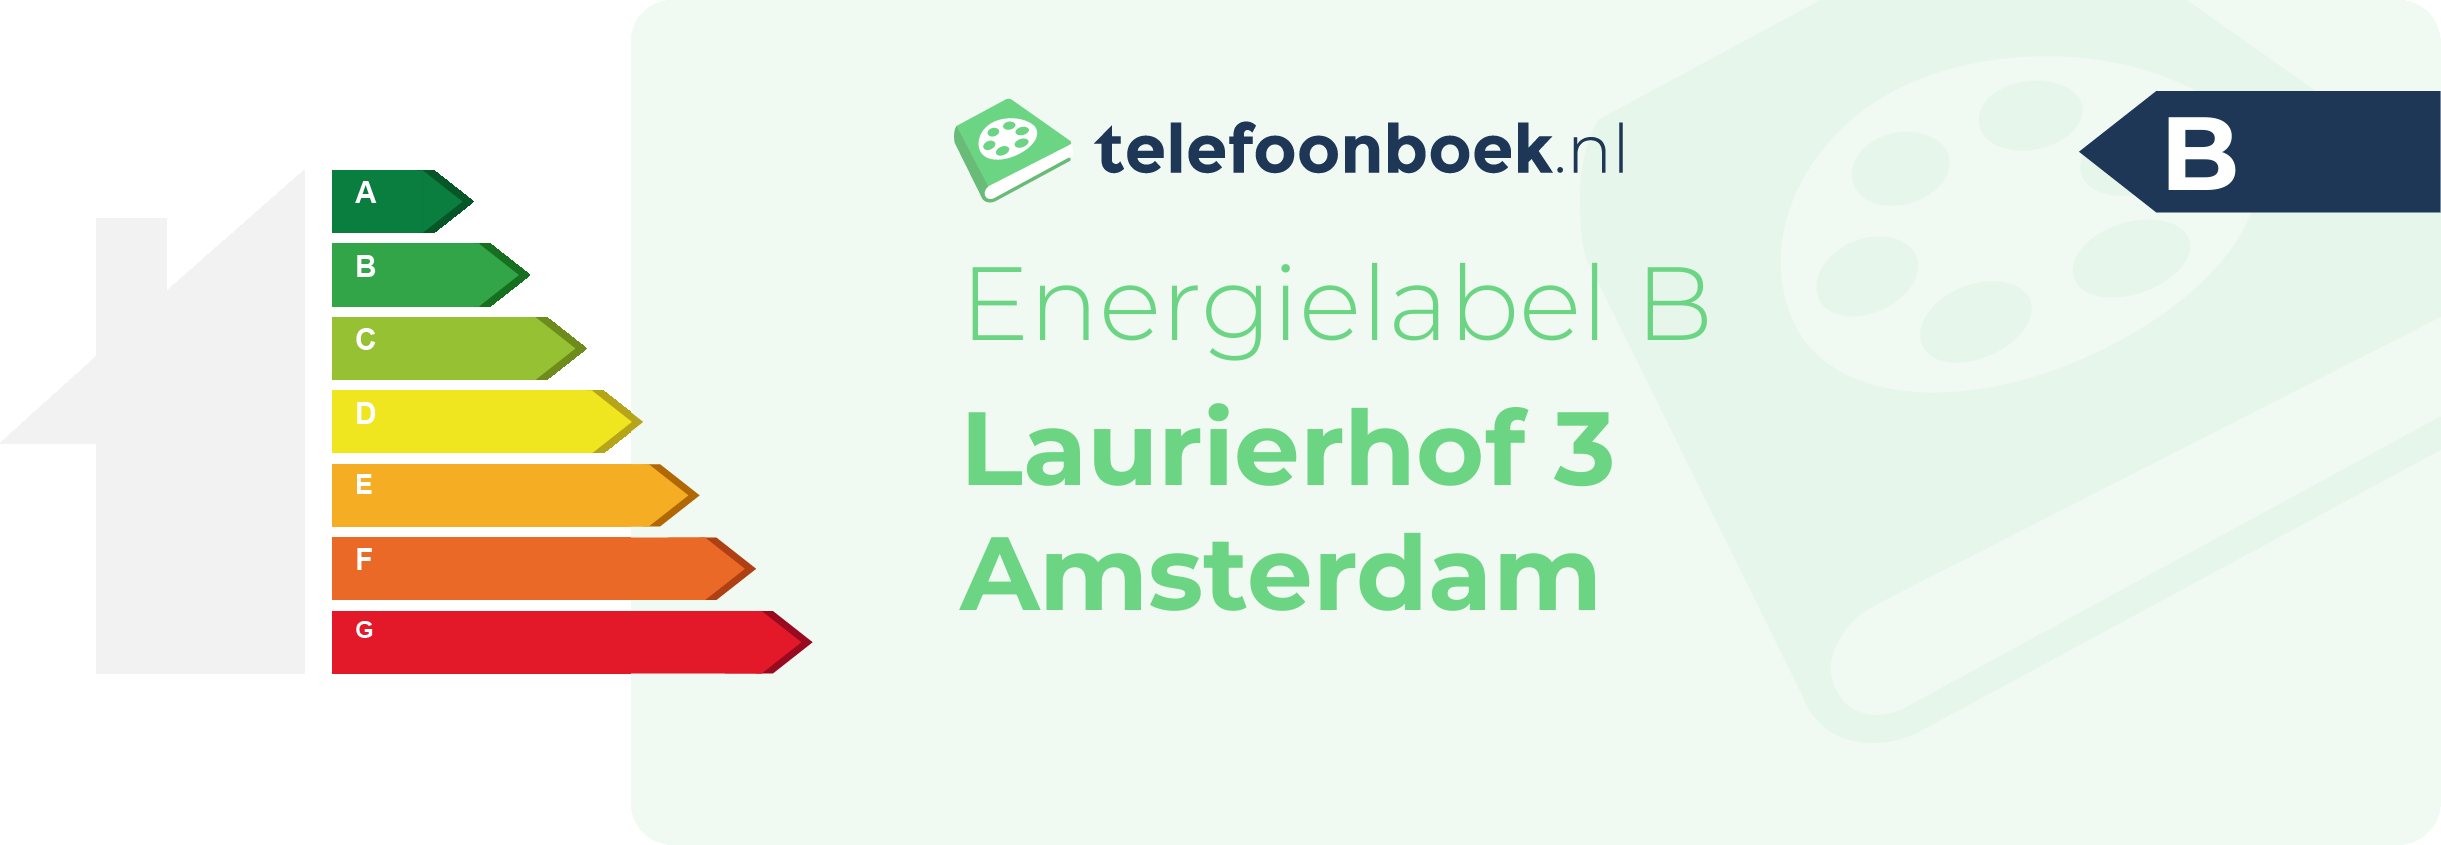 Energielabel Laurierhof 3 Amsterdam